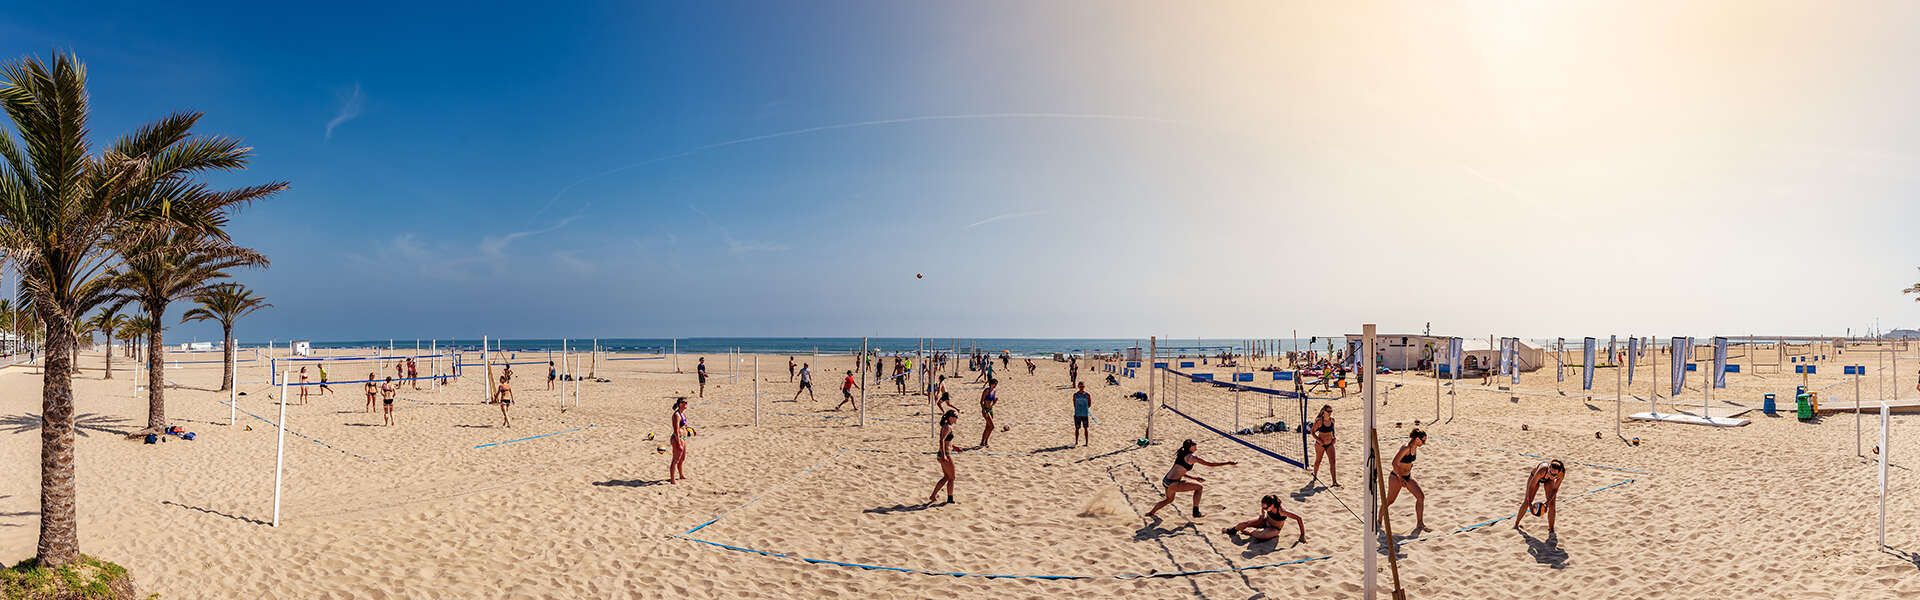 Beach-Volleyball Hotspot in Europa